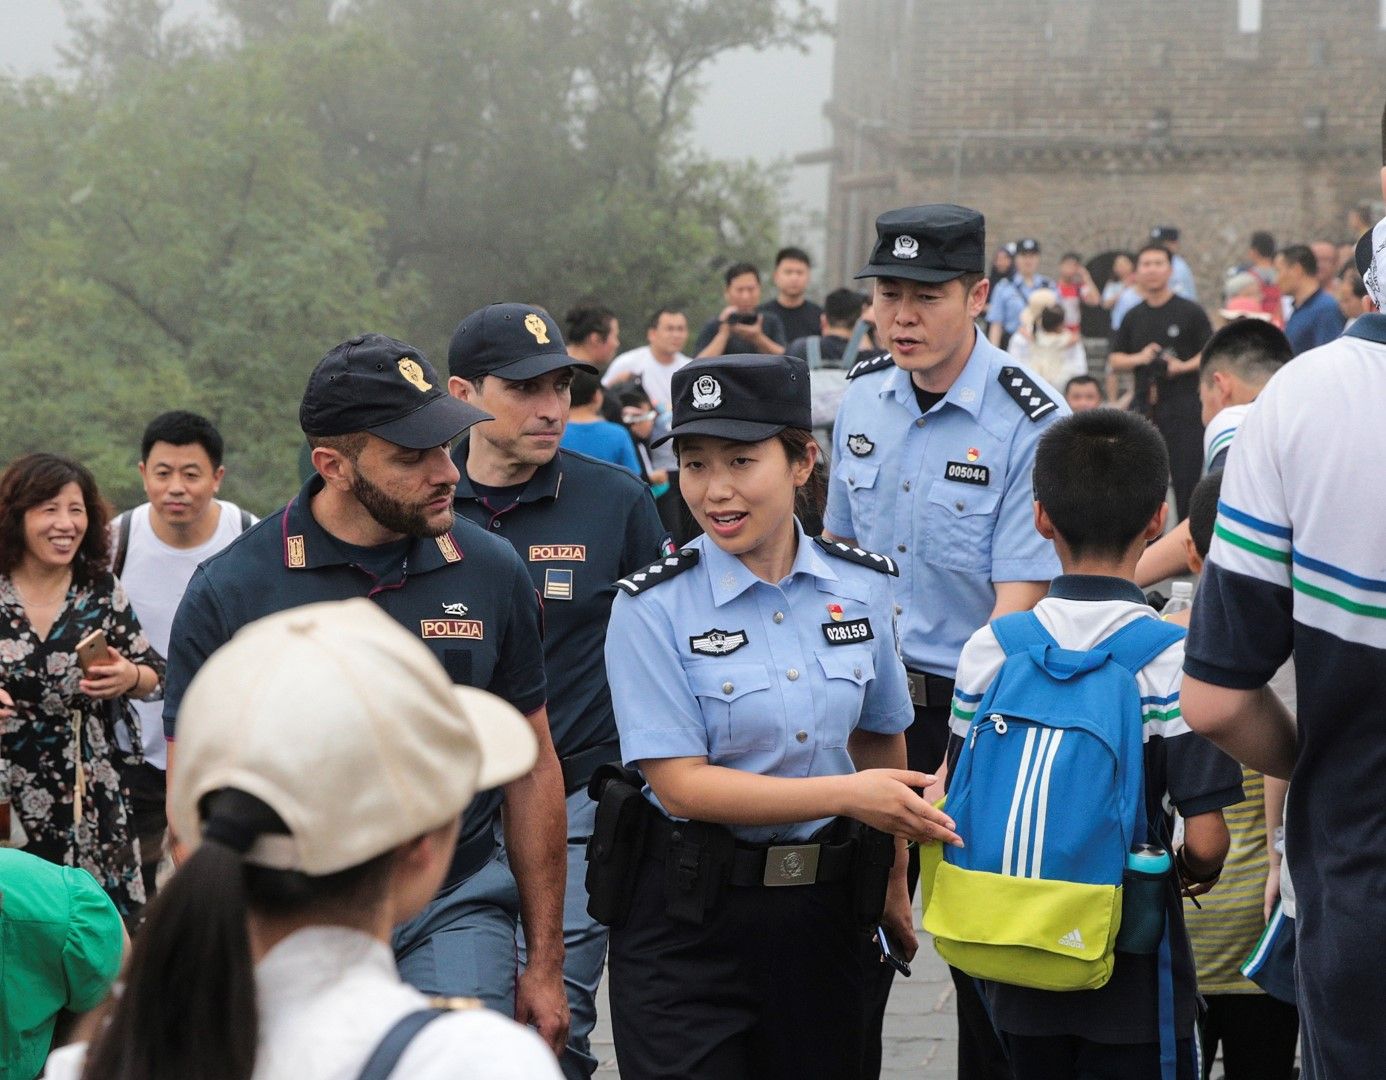 Италиански полицаи патрулират заедно с китайските на стената в Пекин